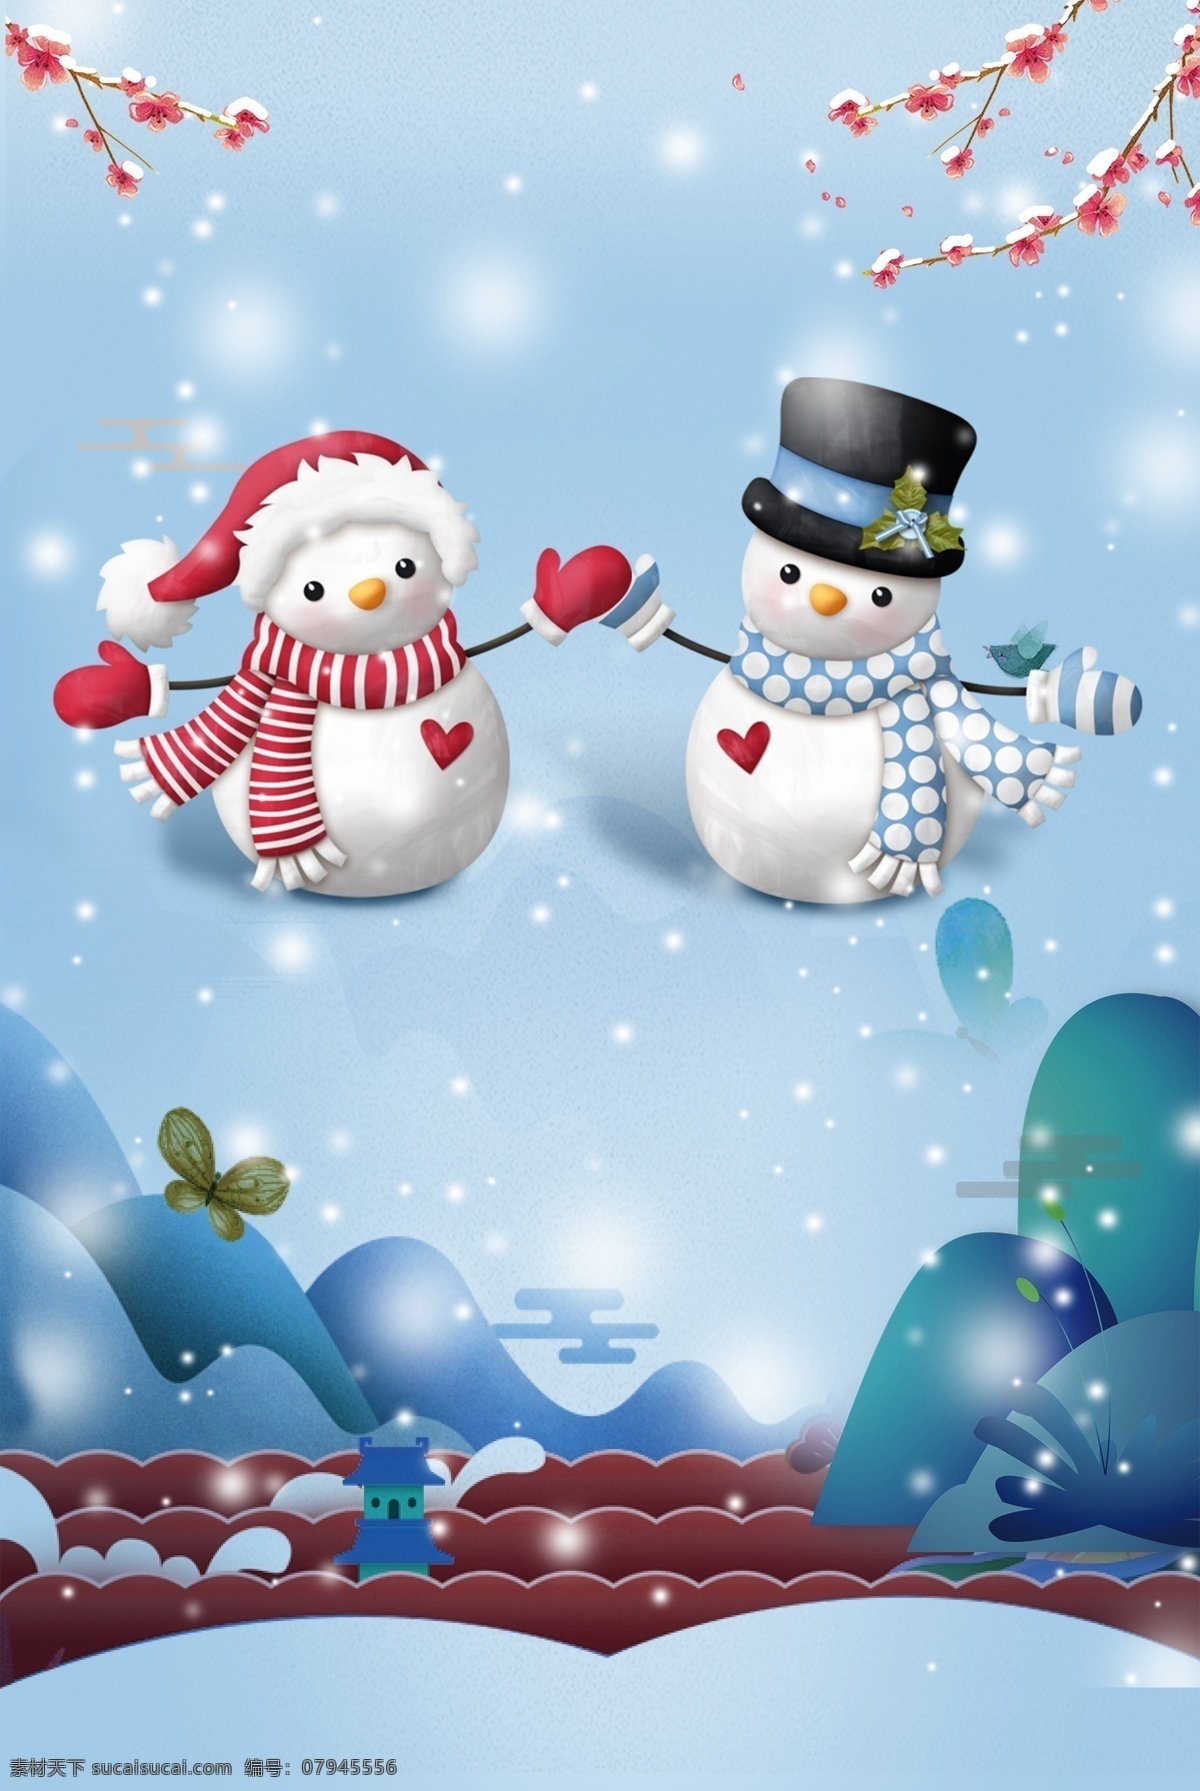 唯美 圣诞 雪人 背景 圣诞背景 冬天 可爱 圣诞节 雪人情侣 下雪 冬季背景 冬至 雪人背景